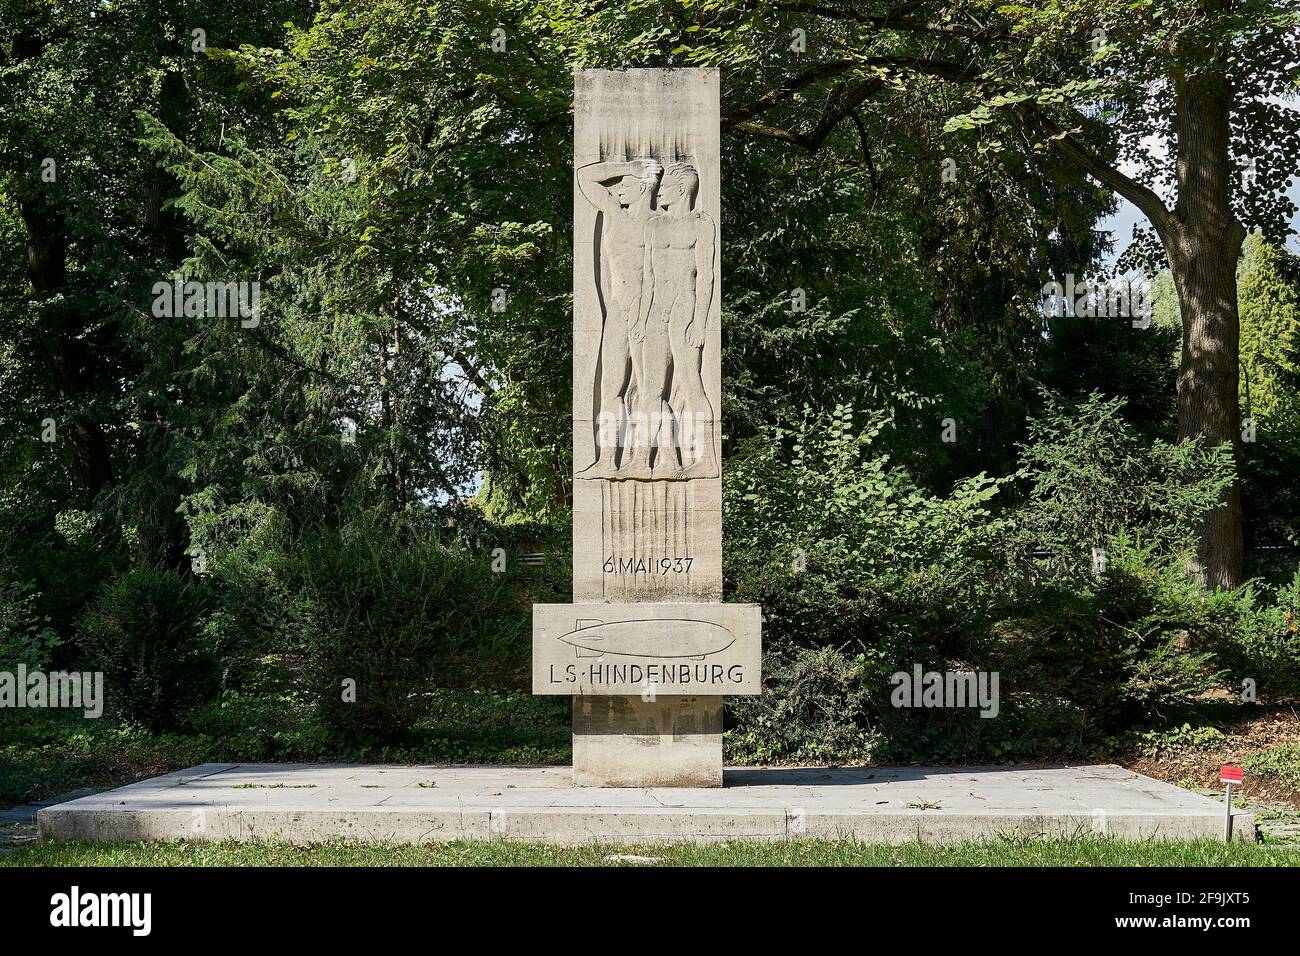 Denkmal zum Unglück von Luftschiff Hindenburg in Lakehurst, Etats-Unis am 06.05.1937, Gemeinschaftsgrabstätte von 7 Opfern, Hauptfriedhof, Francfort-sur-le-main, Banque D'Images